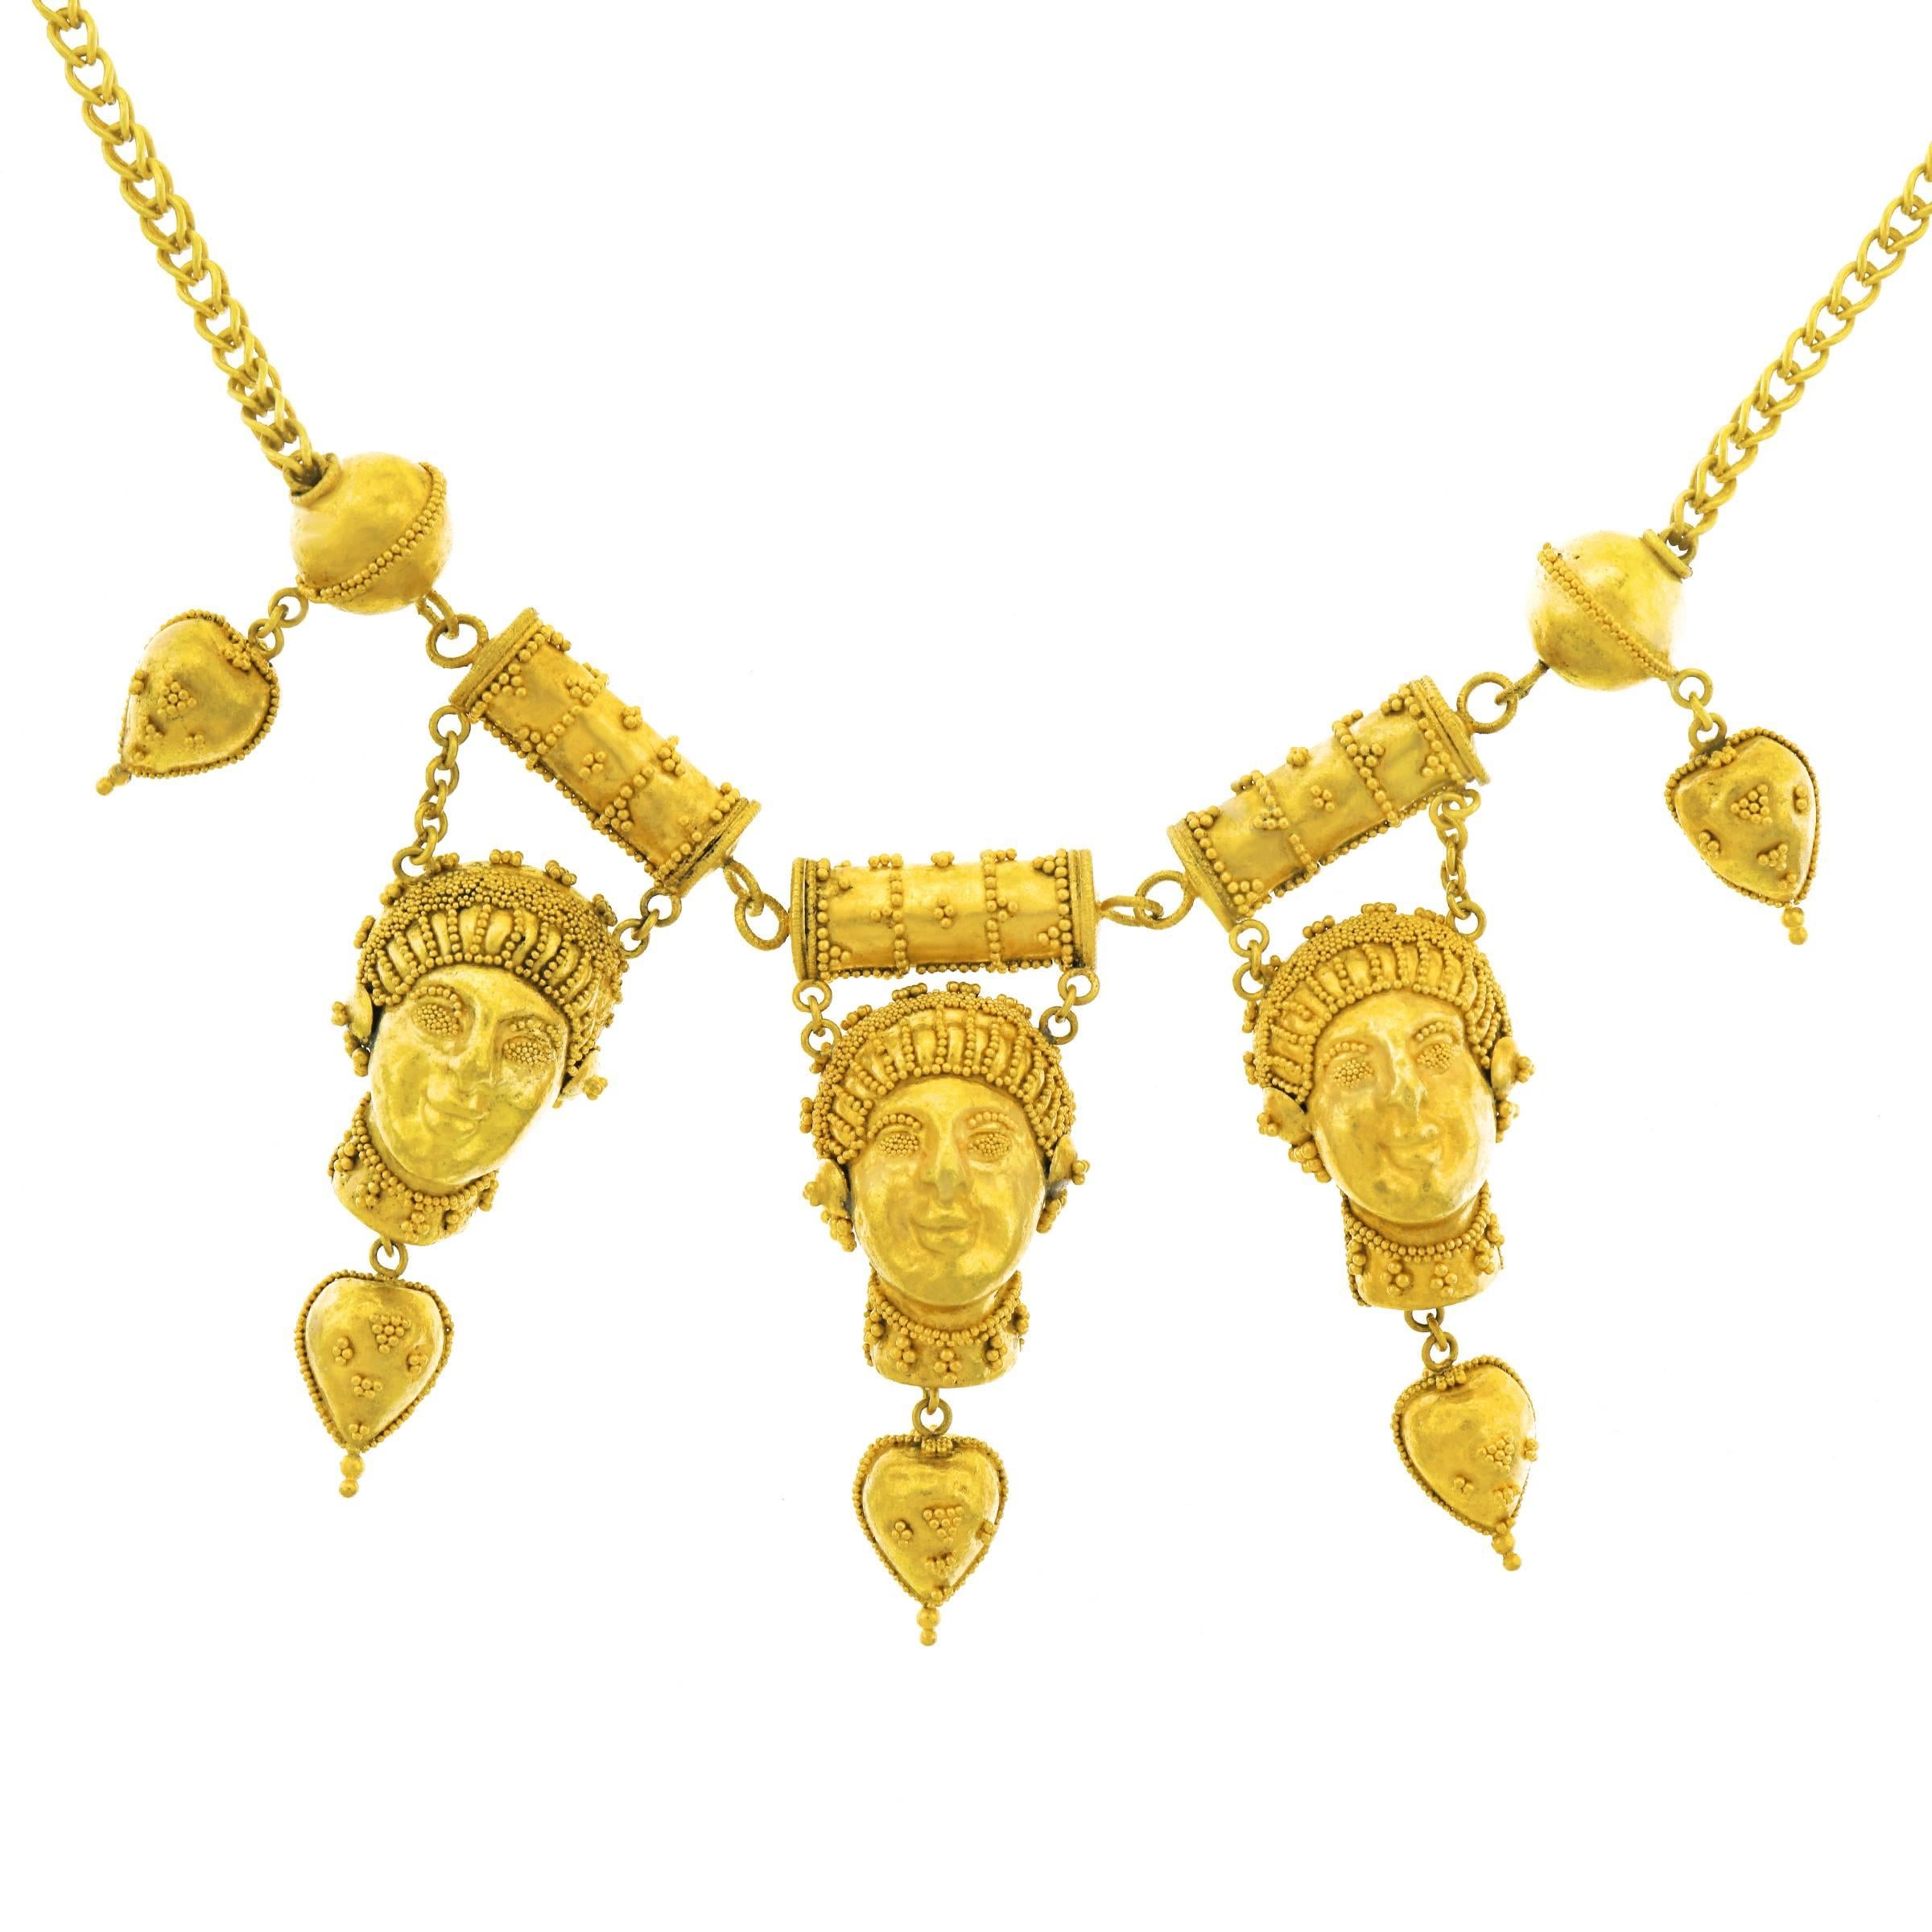 Antique Etruscan Revival Gold Necklace